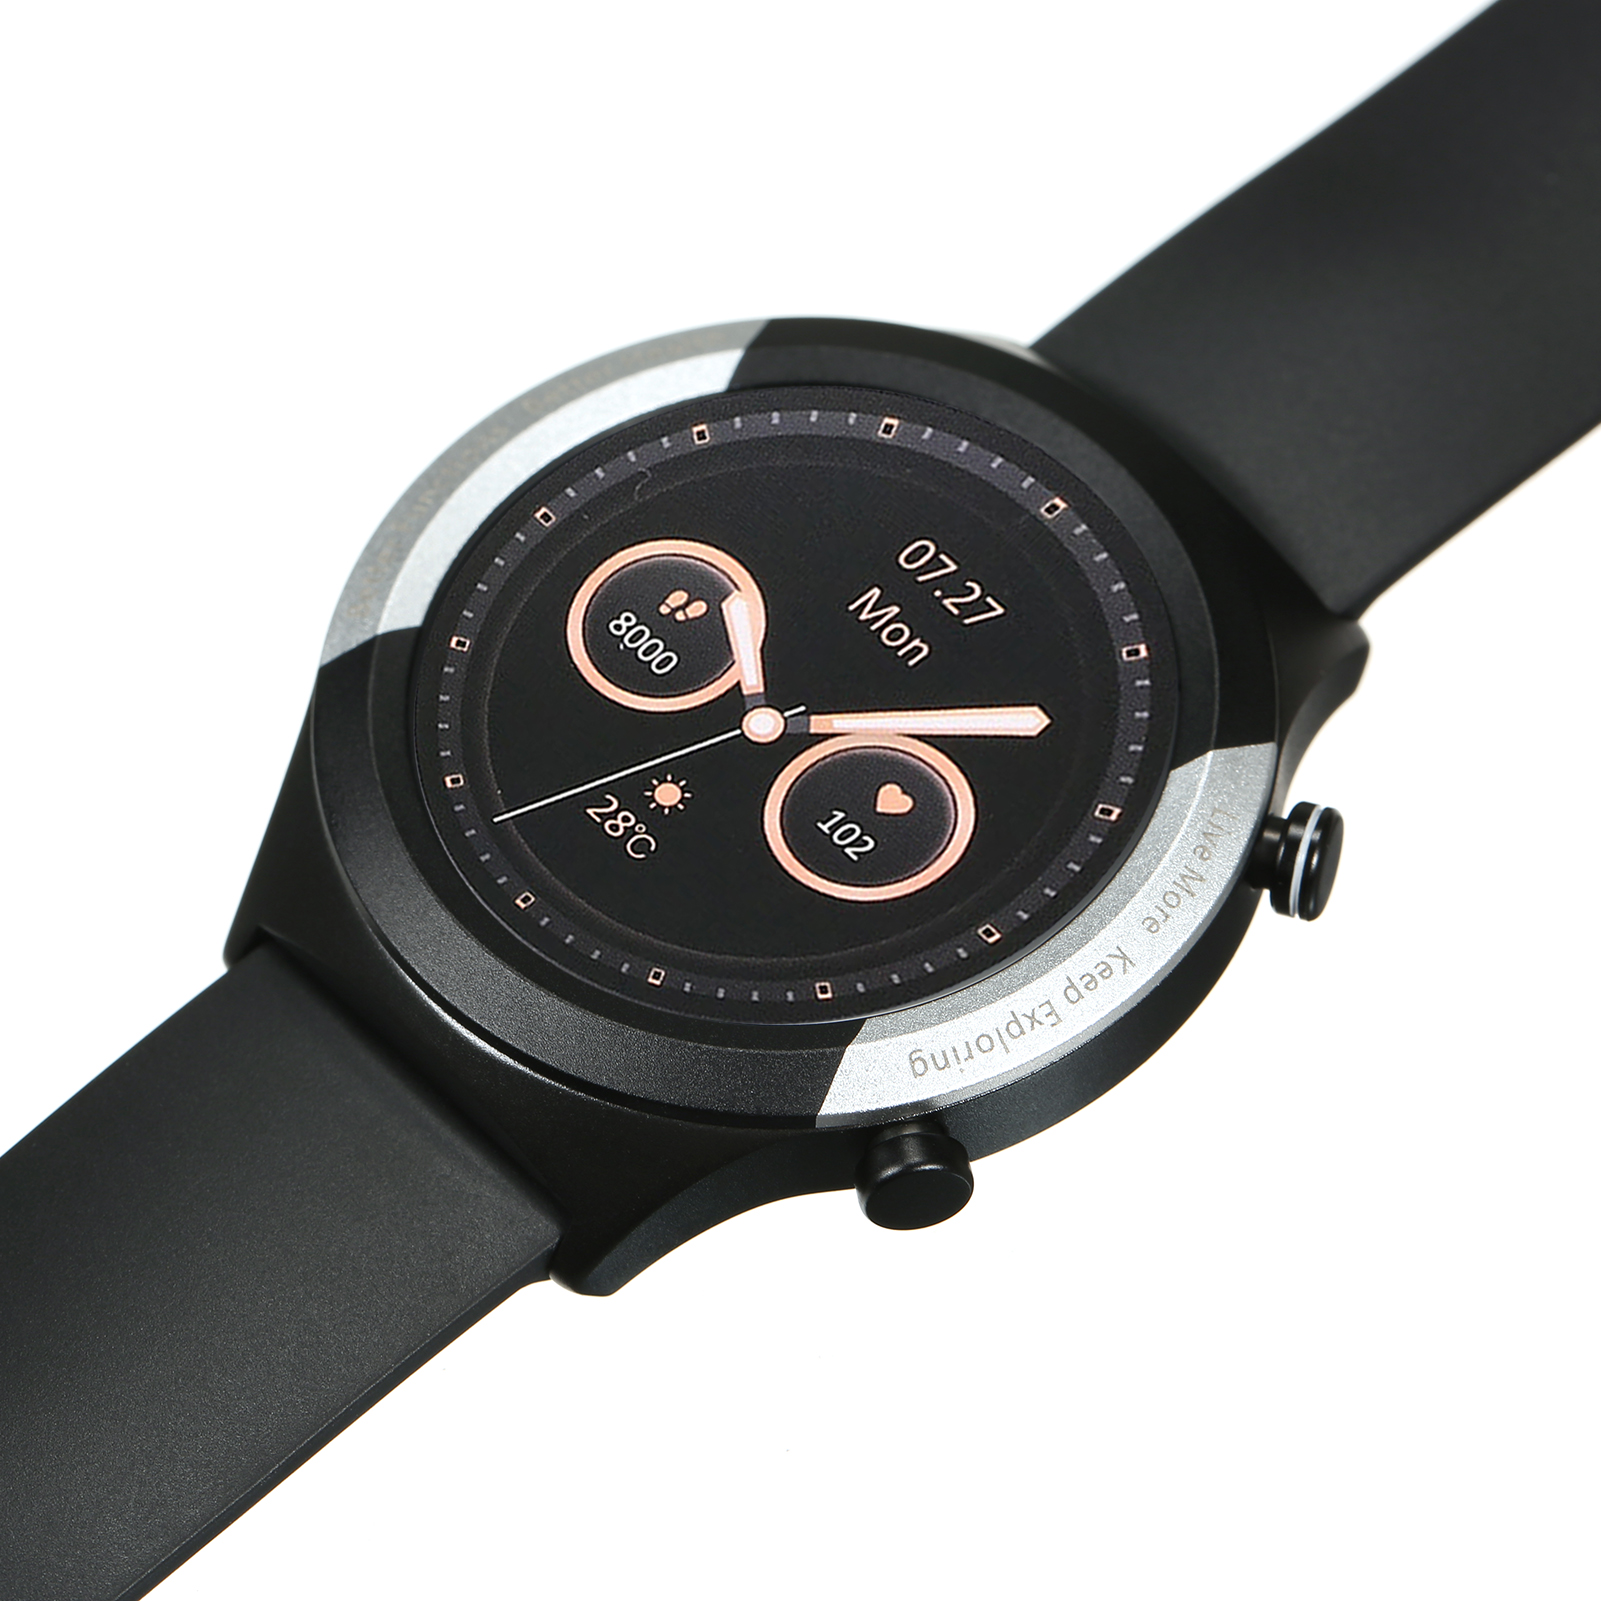 Relógio Inteligente Oraimo Smart Watch R – ATM3 – Oraimo